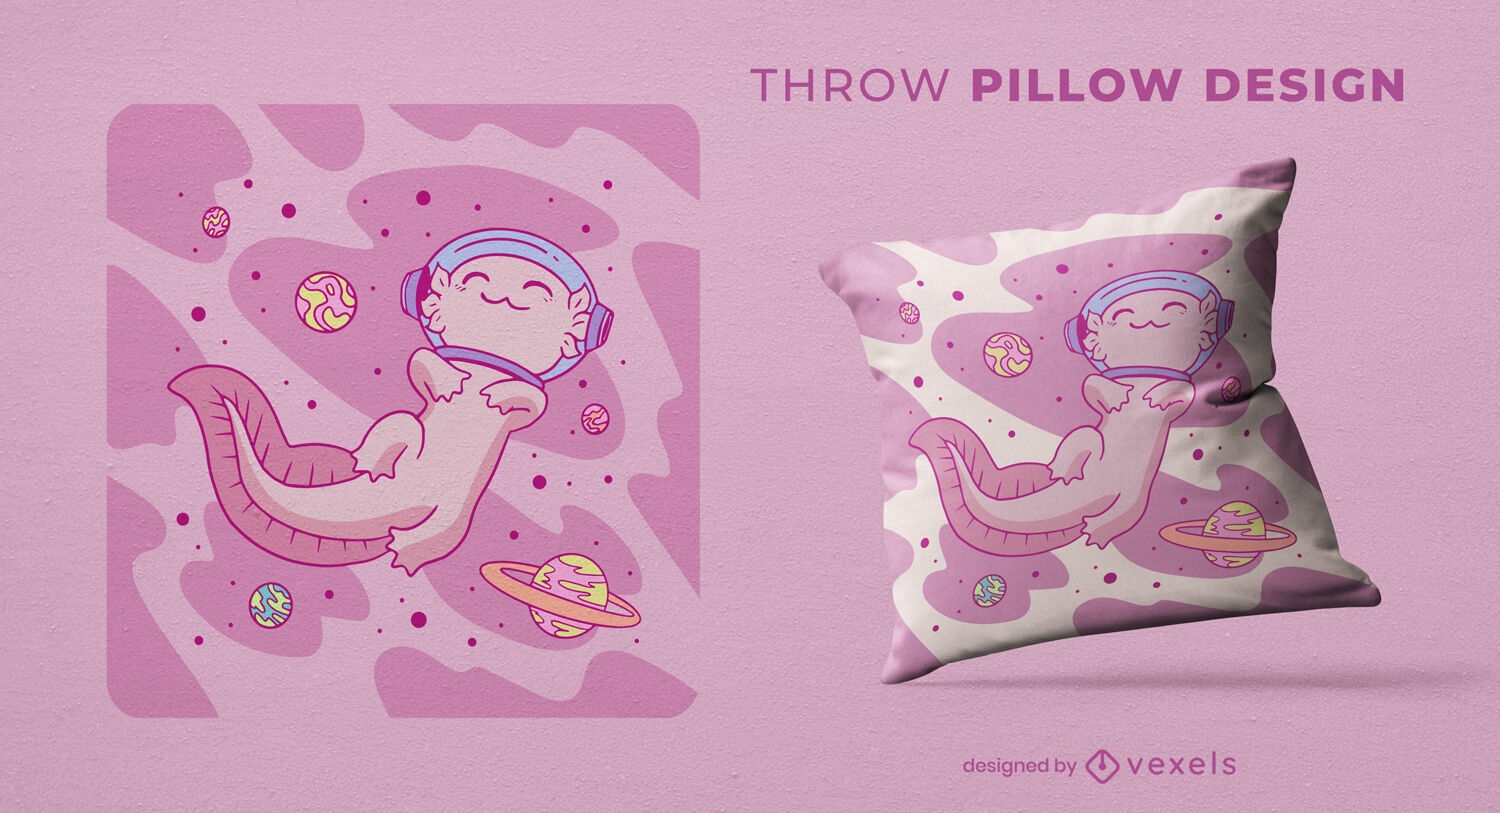 Space axolotl floating throw pillow design